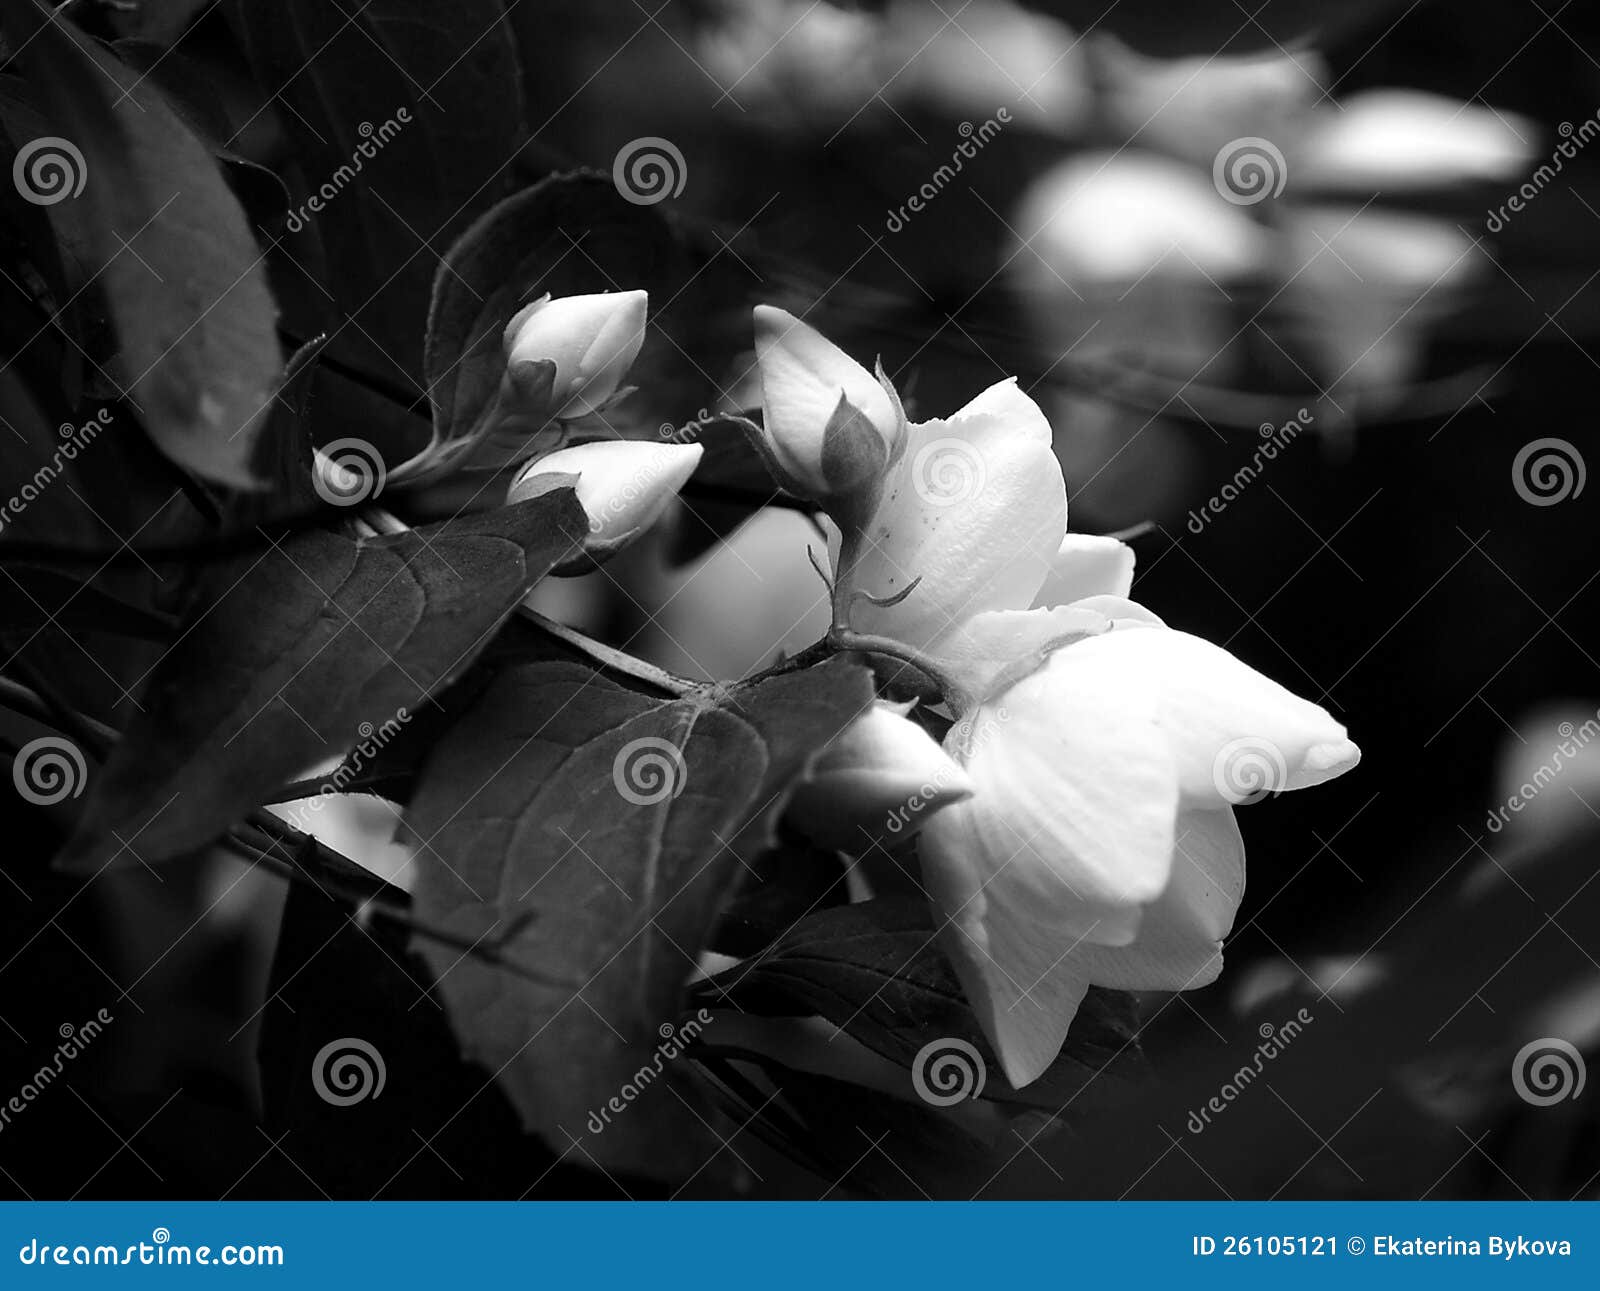 Яблоня зацветая в светотеневом. Светотеневое фото зацветая завтрака-обеда яблони с малыми кнопками и большими яркими цветками, с белыми цветками на предпосылке черноты bokeh